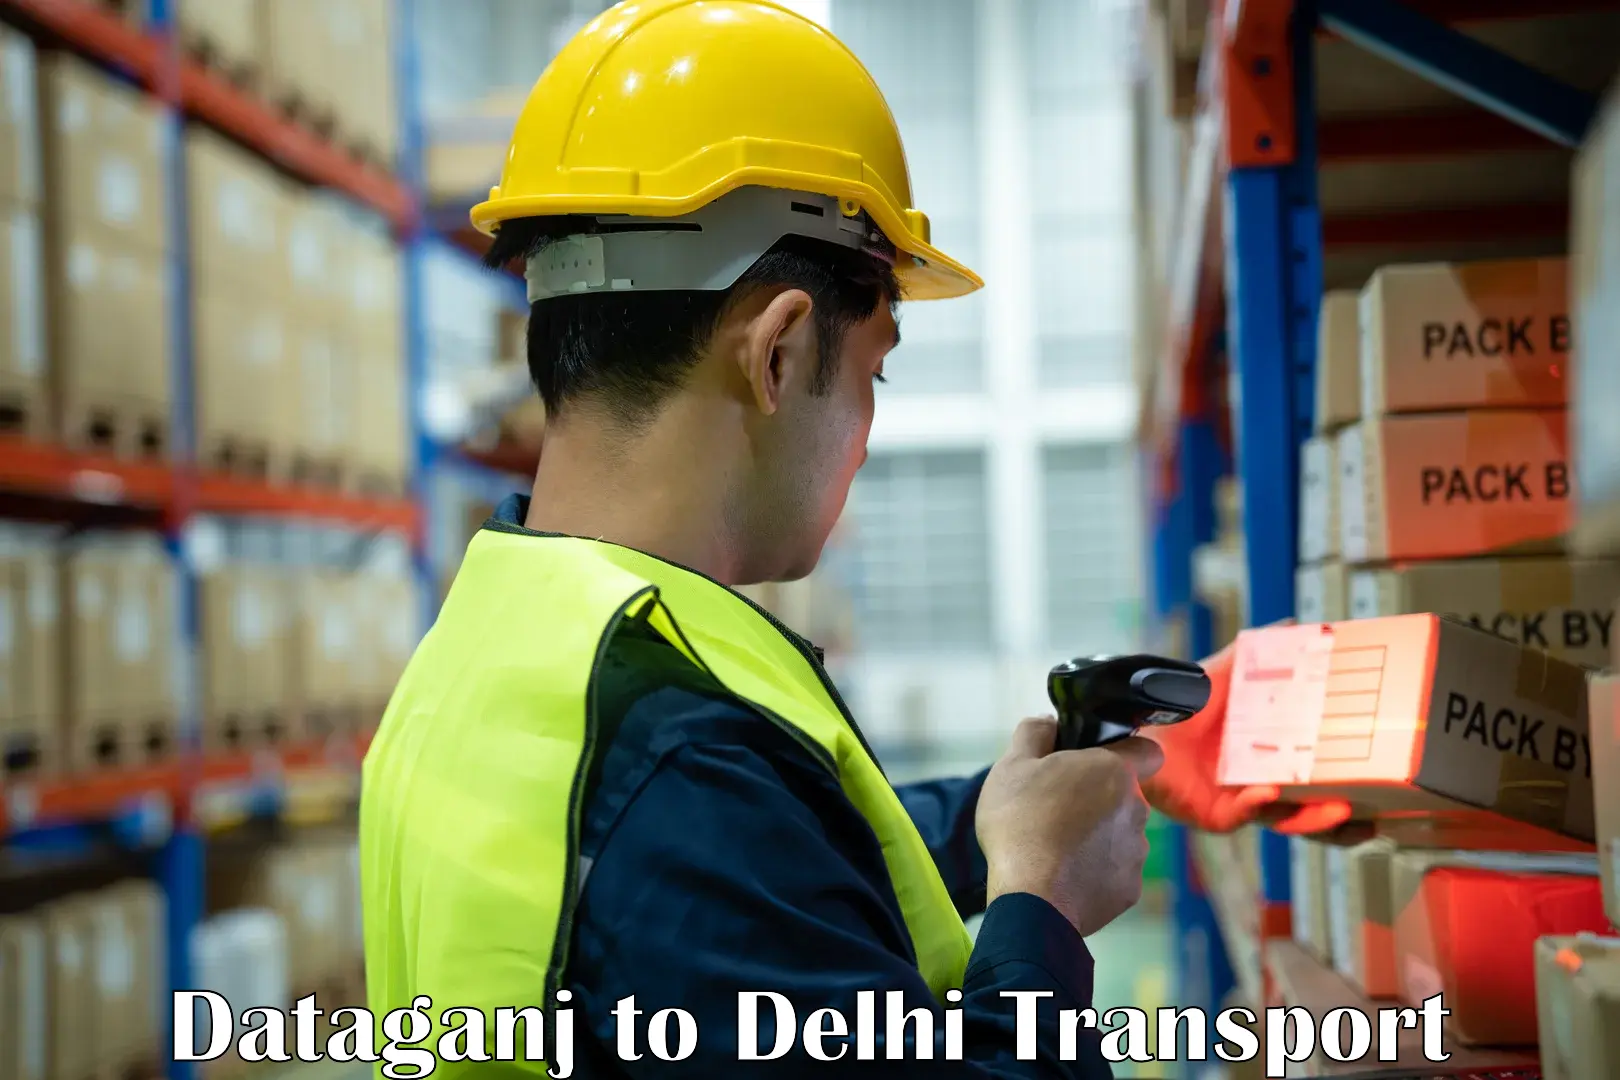 Truck transport companies in India Dataganj to Kalkaji